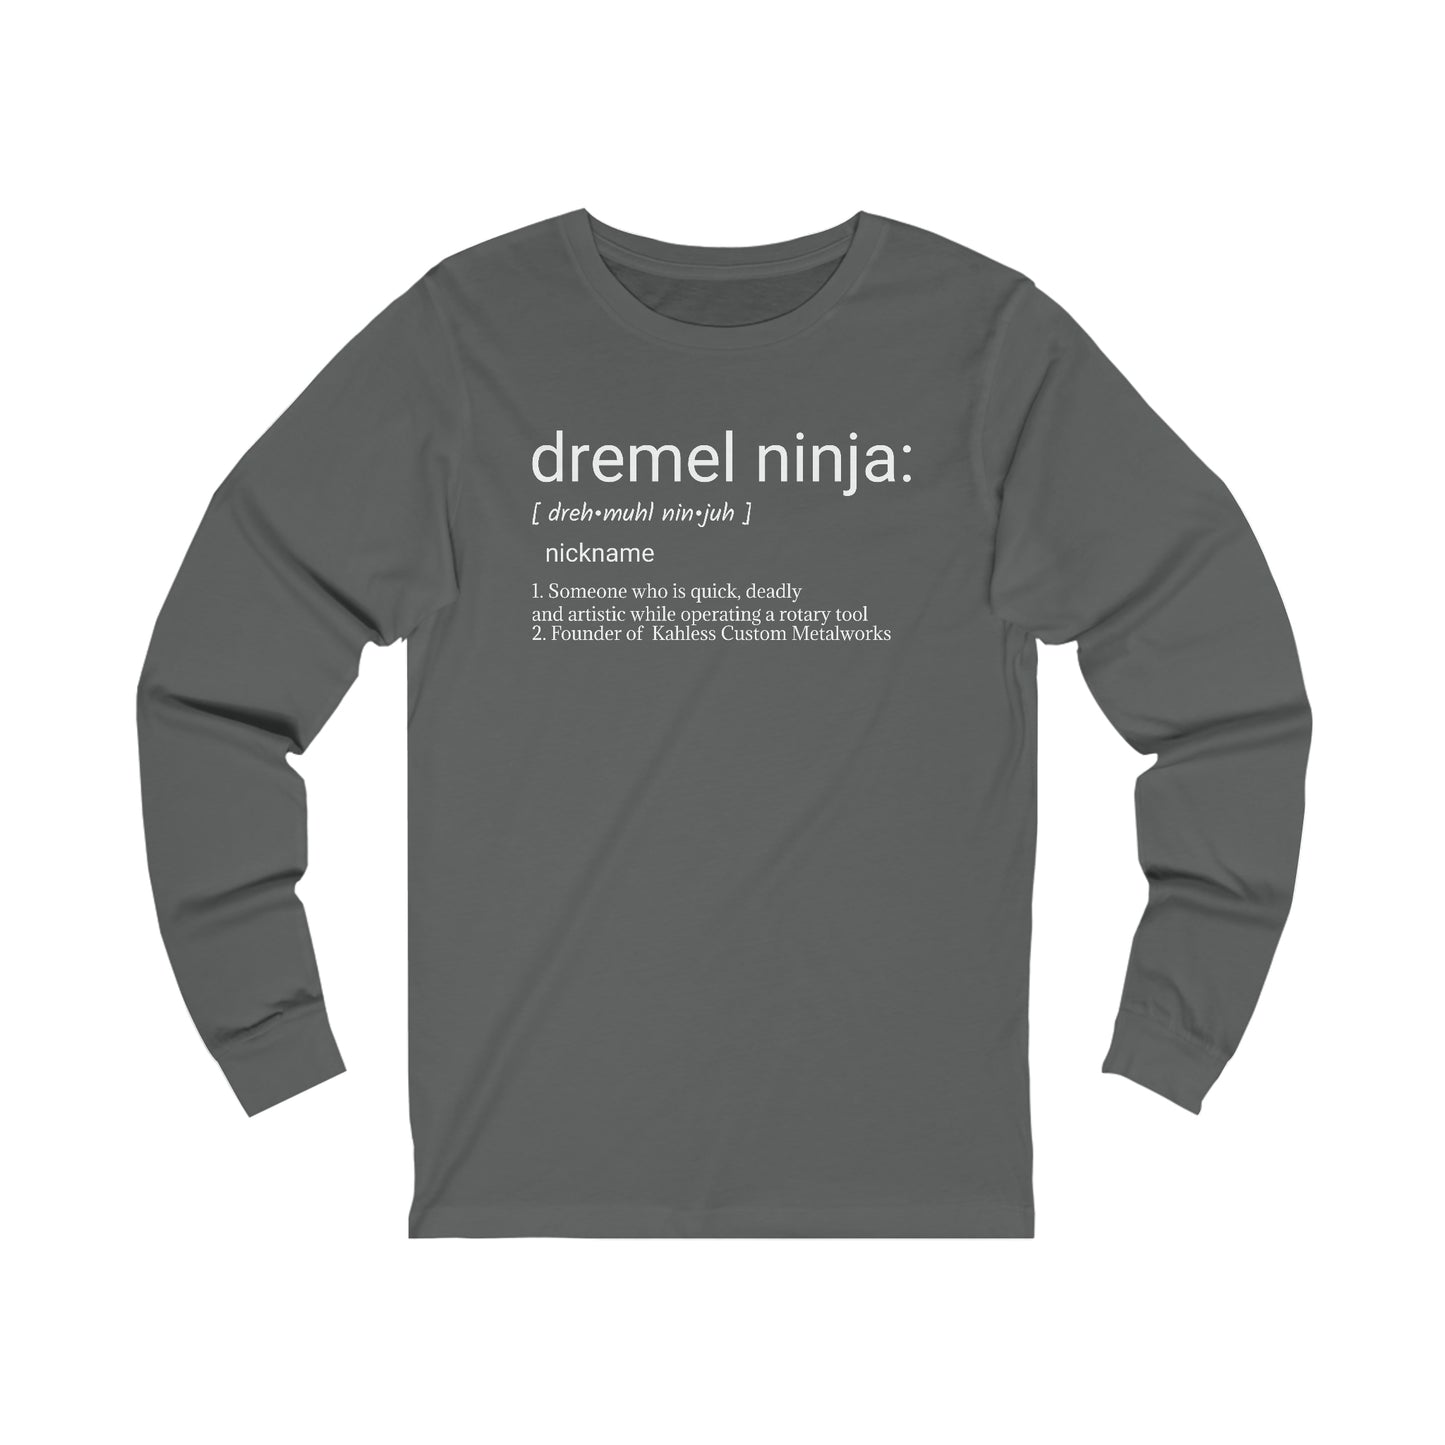 Dremel Ninja Dictionary